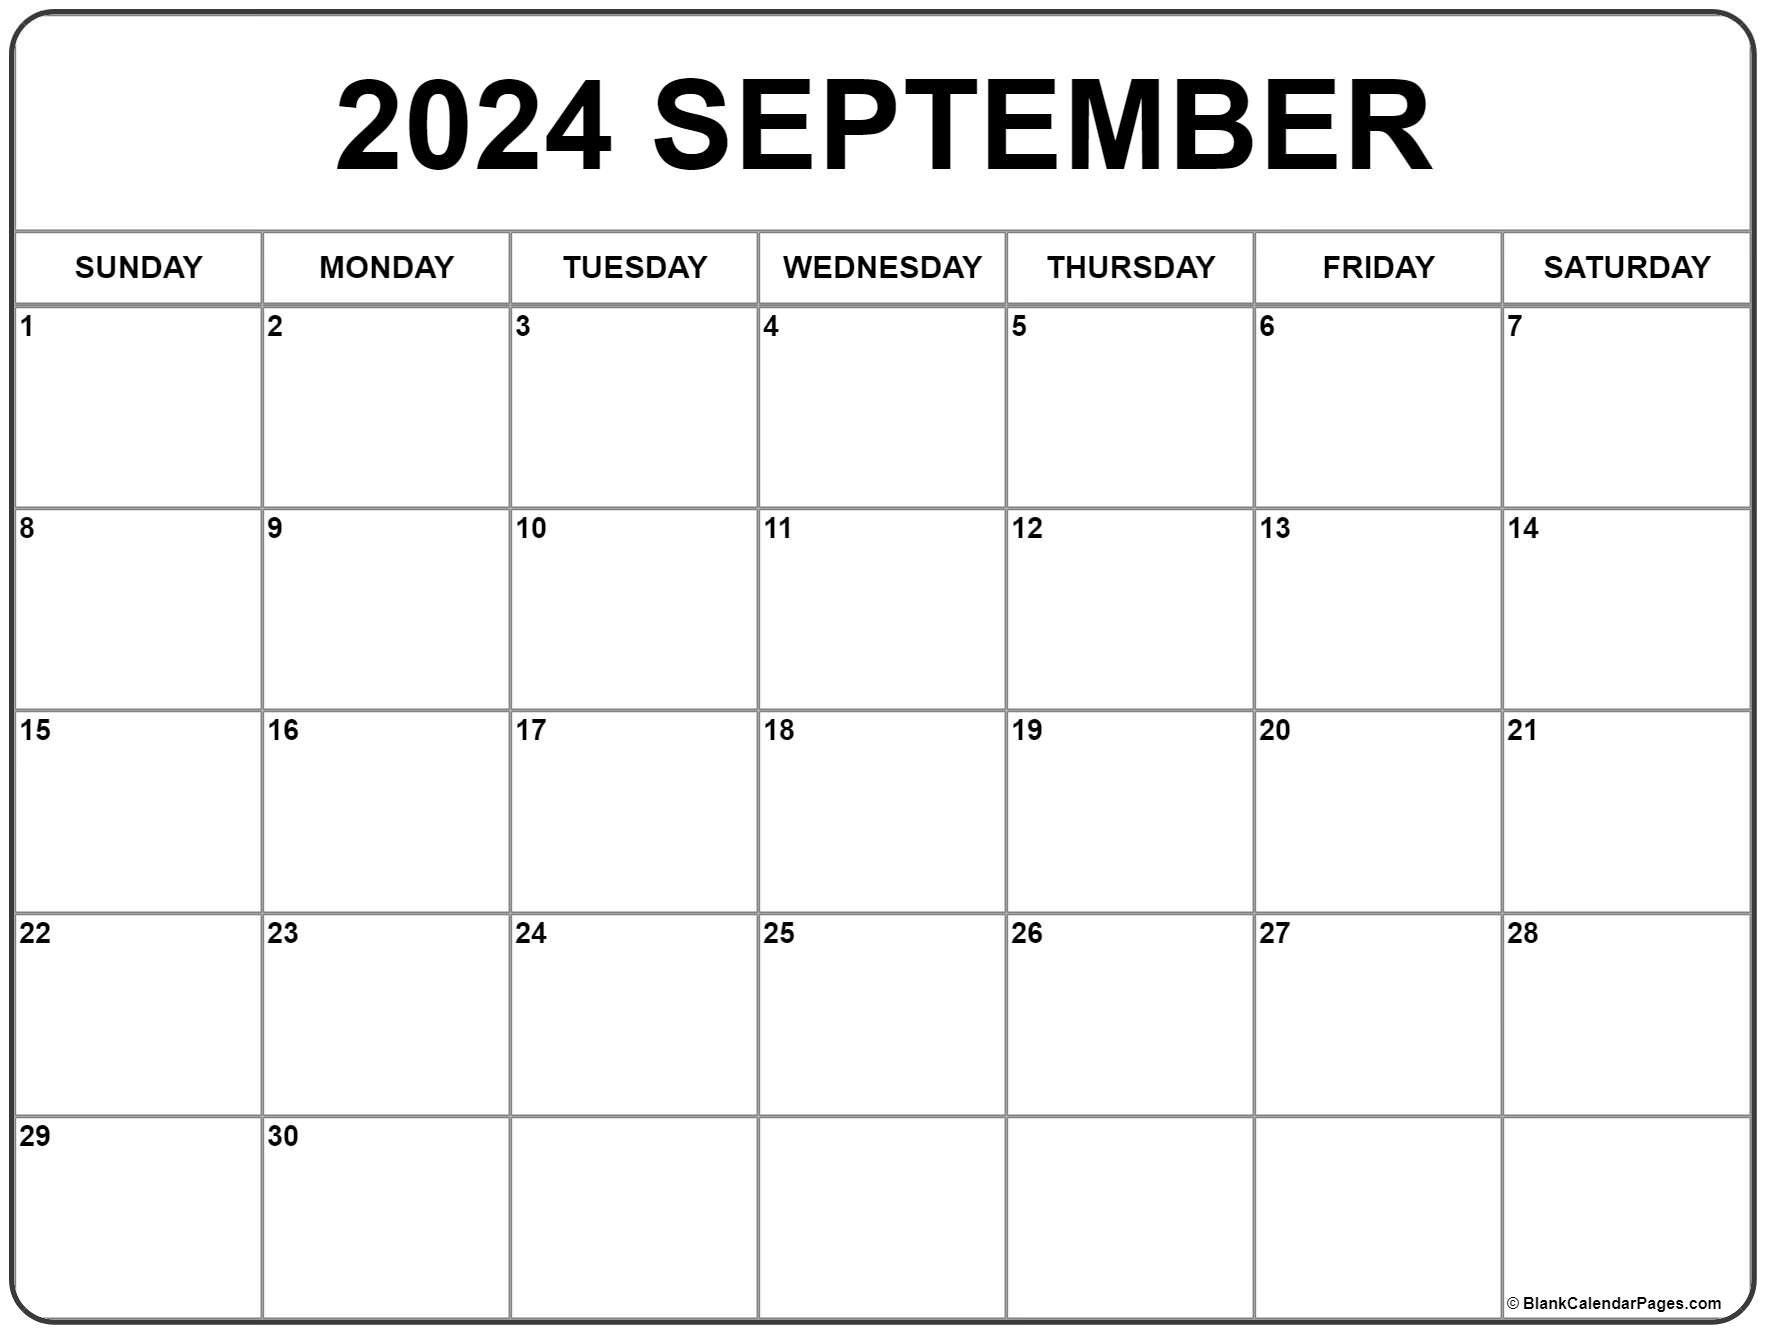 September 2022 Calendar Pdf September 2022 Calendar | Free Printable Calendar Templates